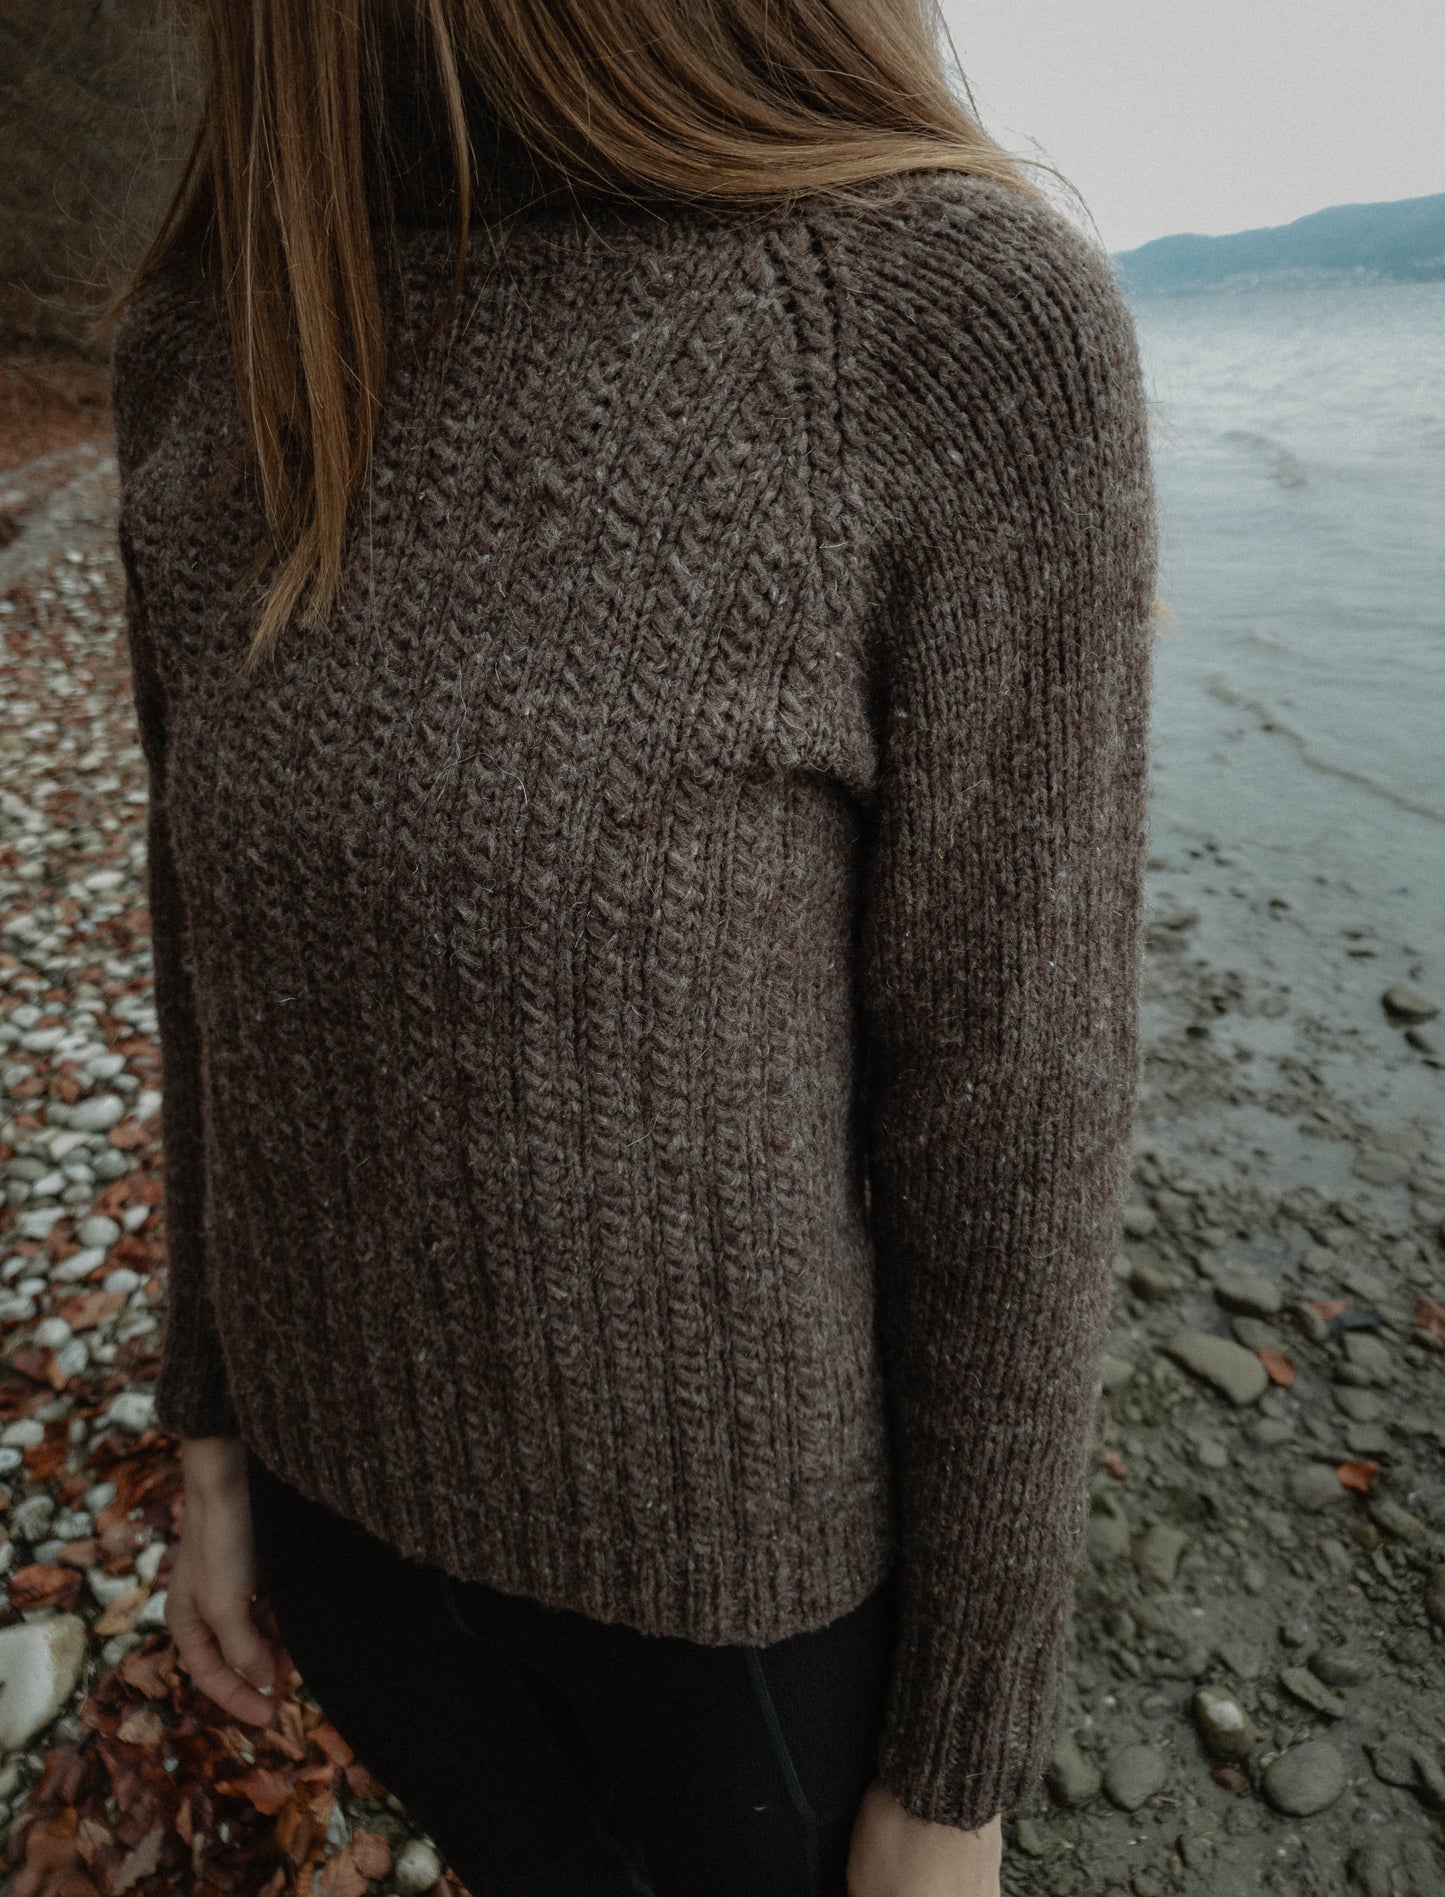 Fisherman's Raglan Sweater - Knitting Pattern